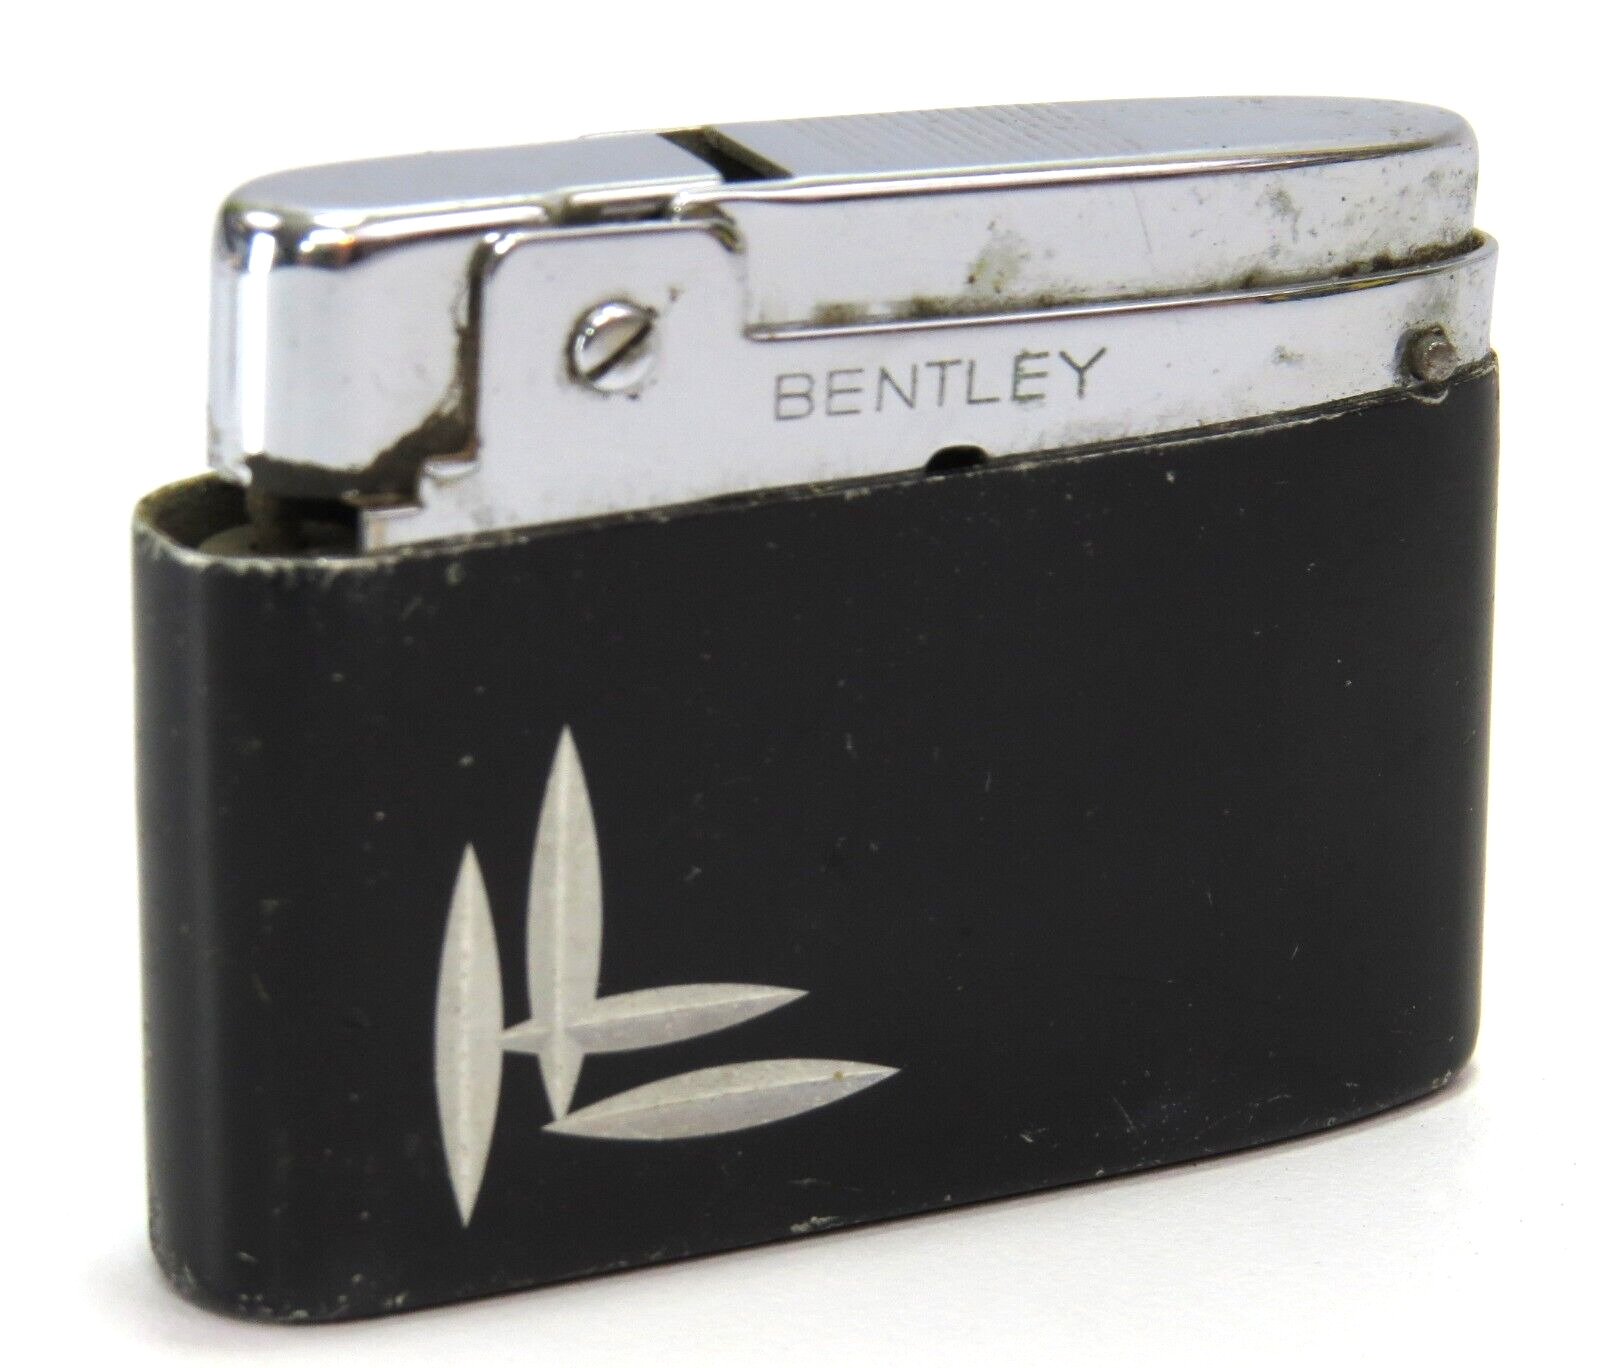 Bentley Austria Vintage Butane Cigarette Lighter, Engraved Black Case - Read